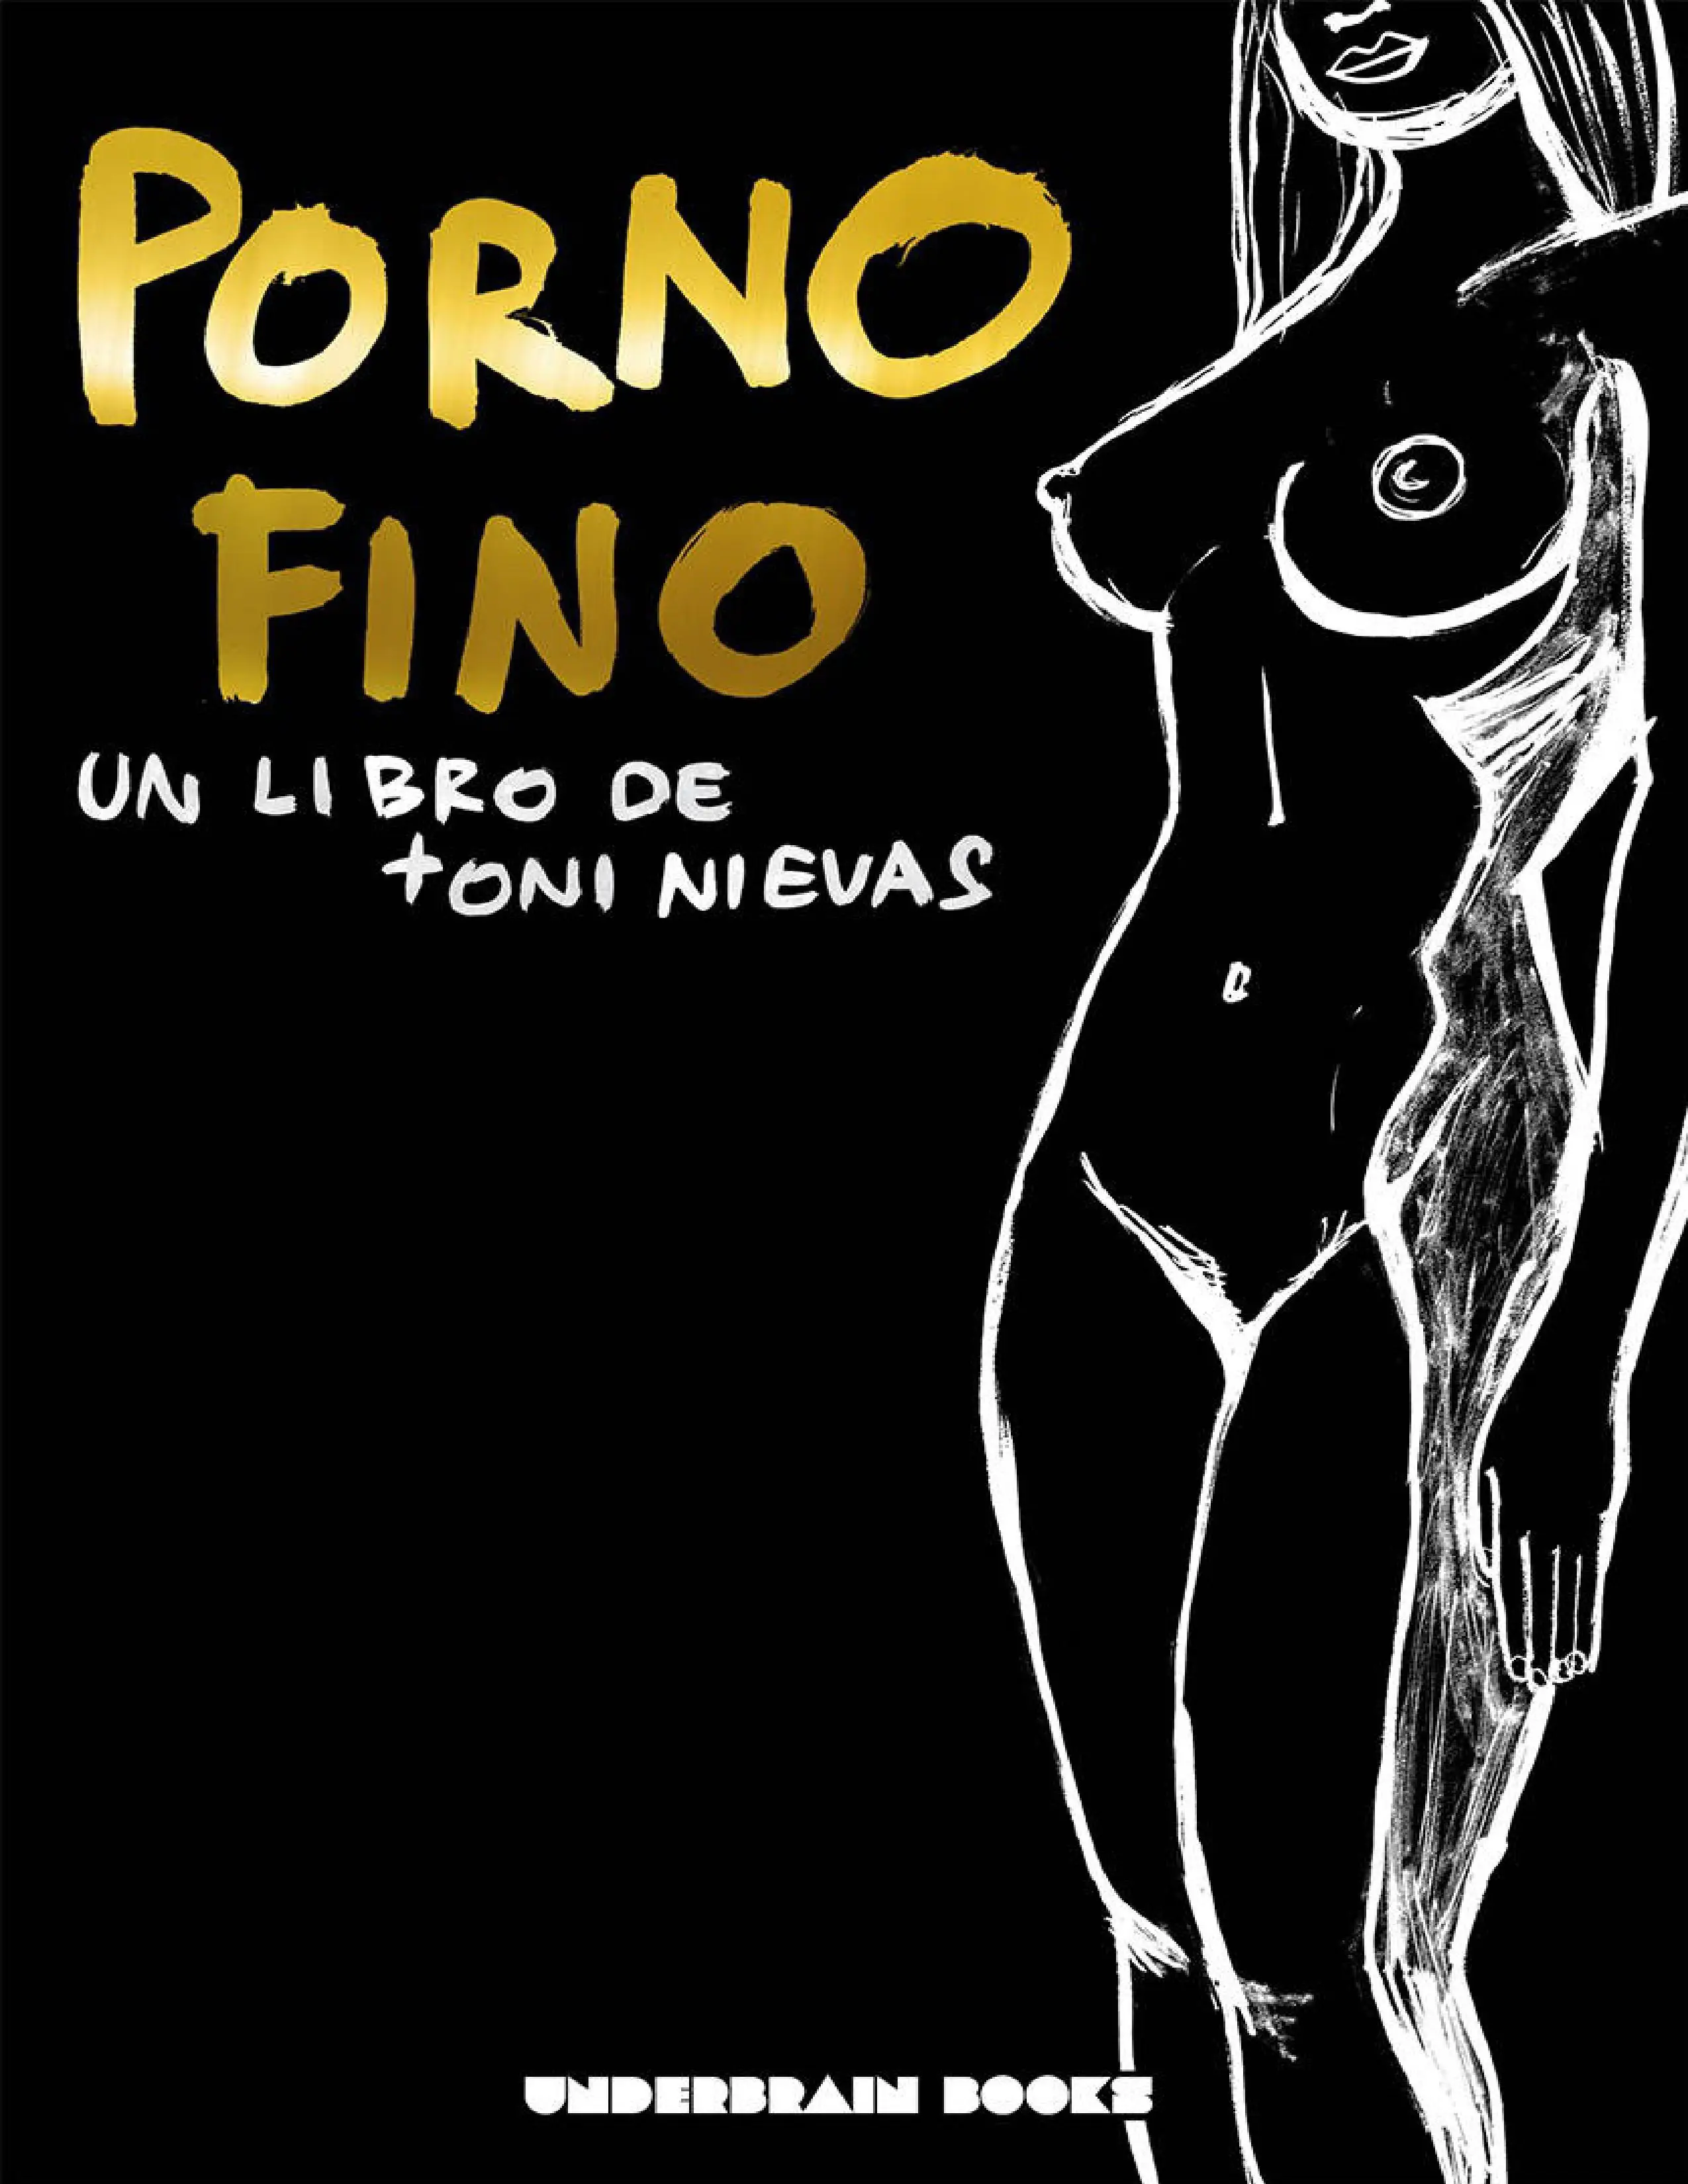 Porno Fino, de Toni Nievas.